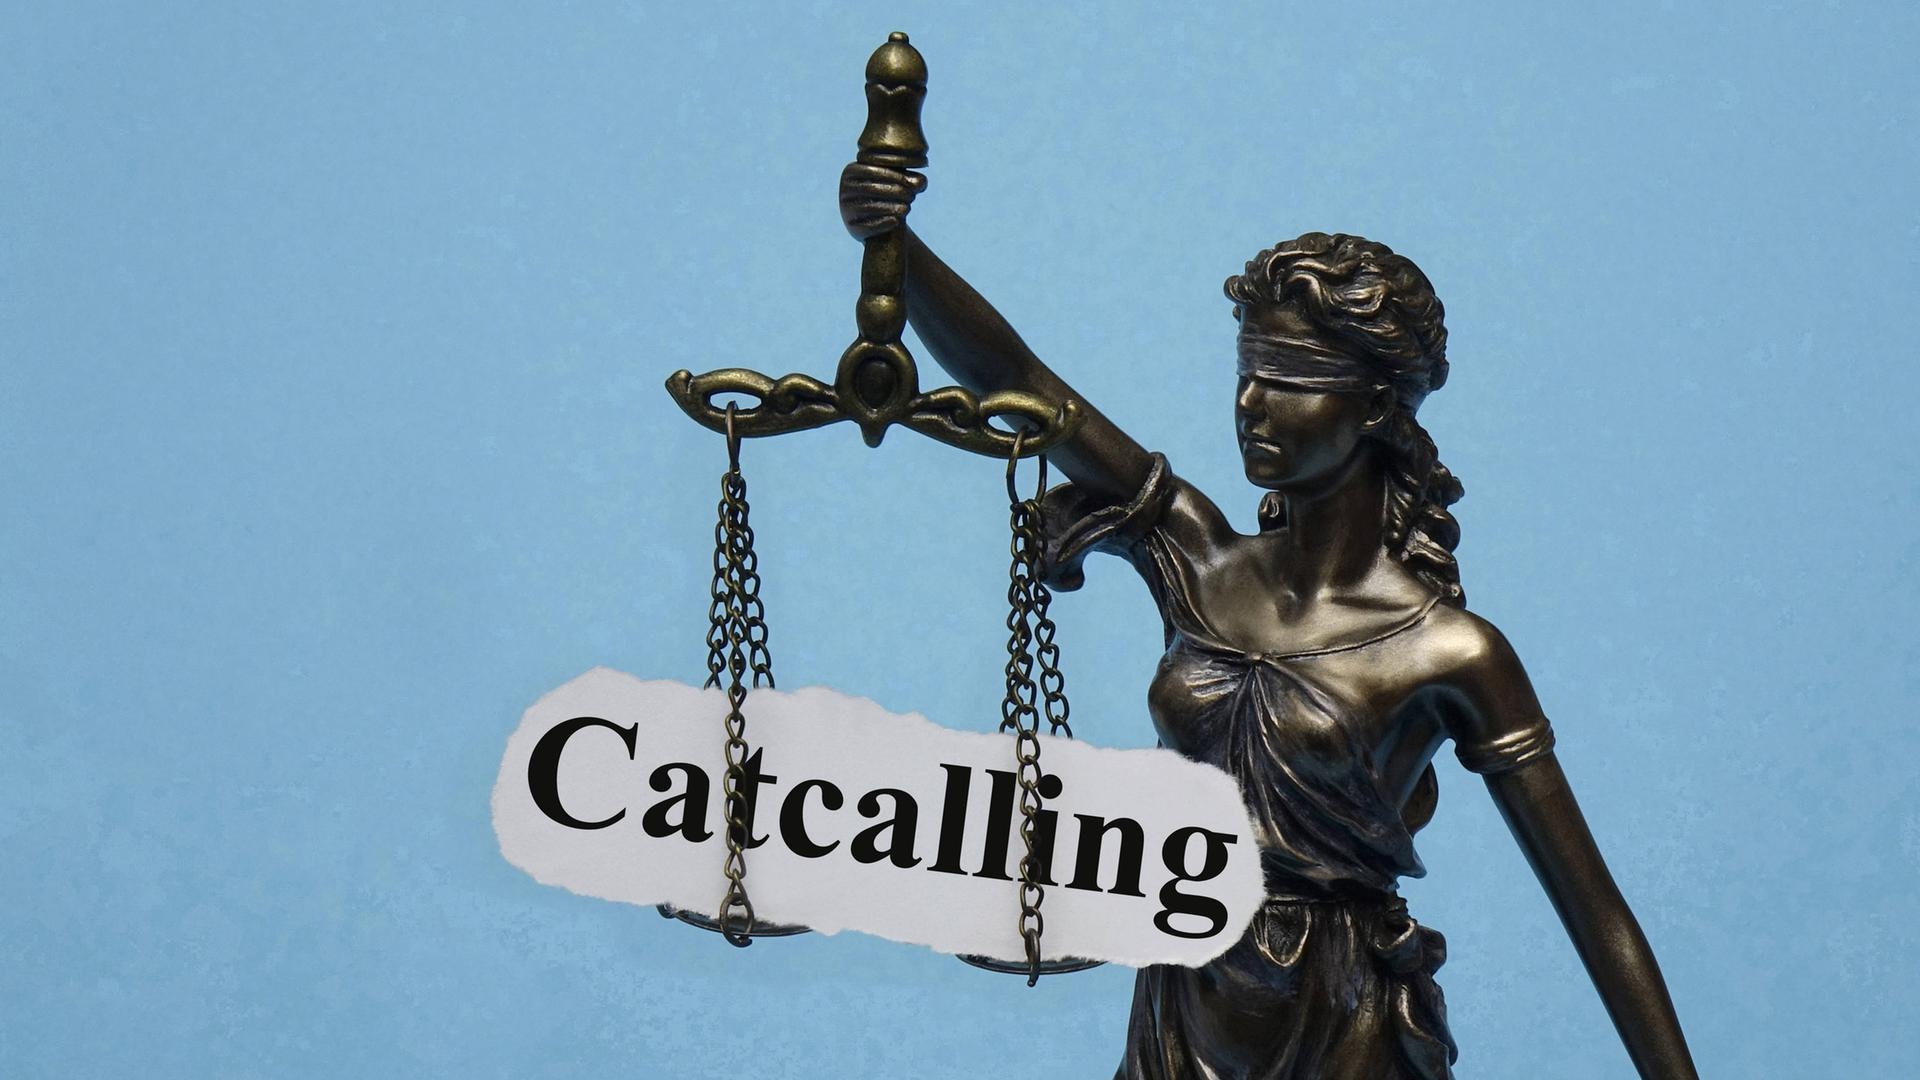 Eine Justizia-Stratue mit verbundenen Augen hat das Wort "Catcalling" auf den Waagschalen.